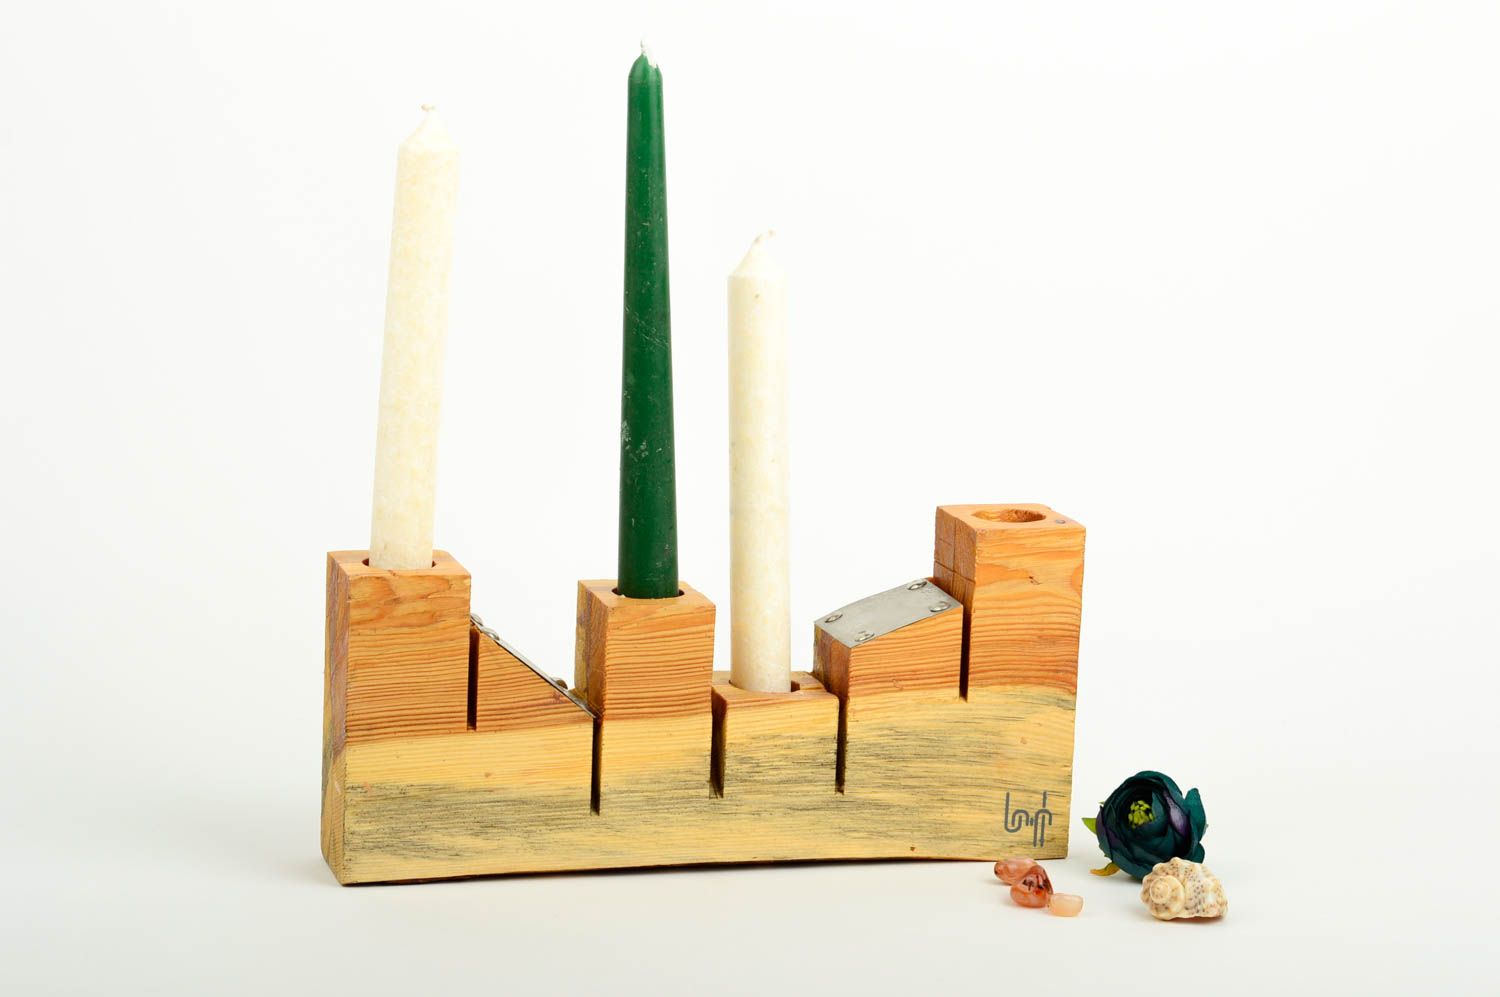 Handmade Kerzenhalter aus Holz Geschenk Idee Haus Dekoration Tisch Kerzenständer foto 1